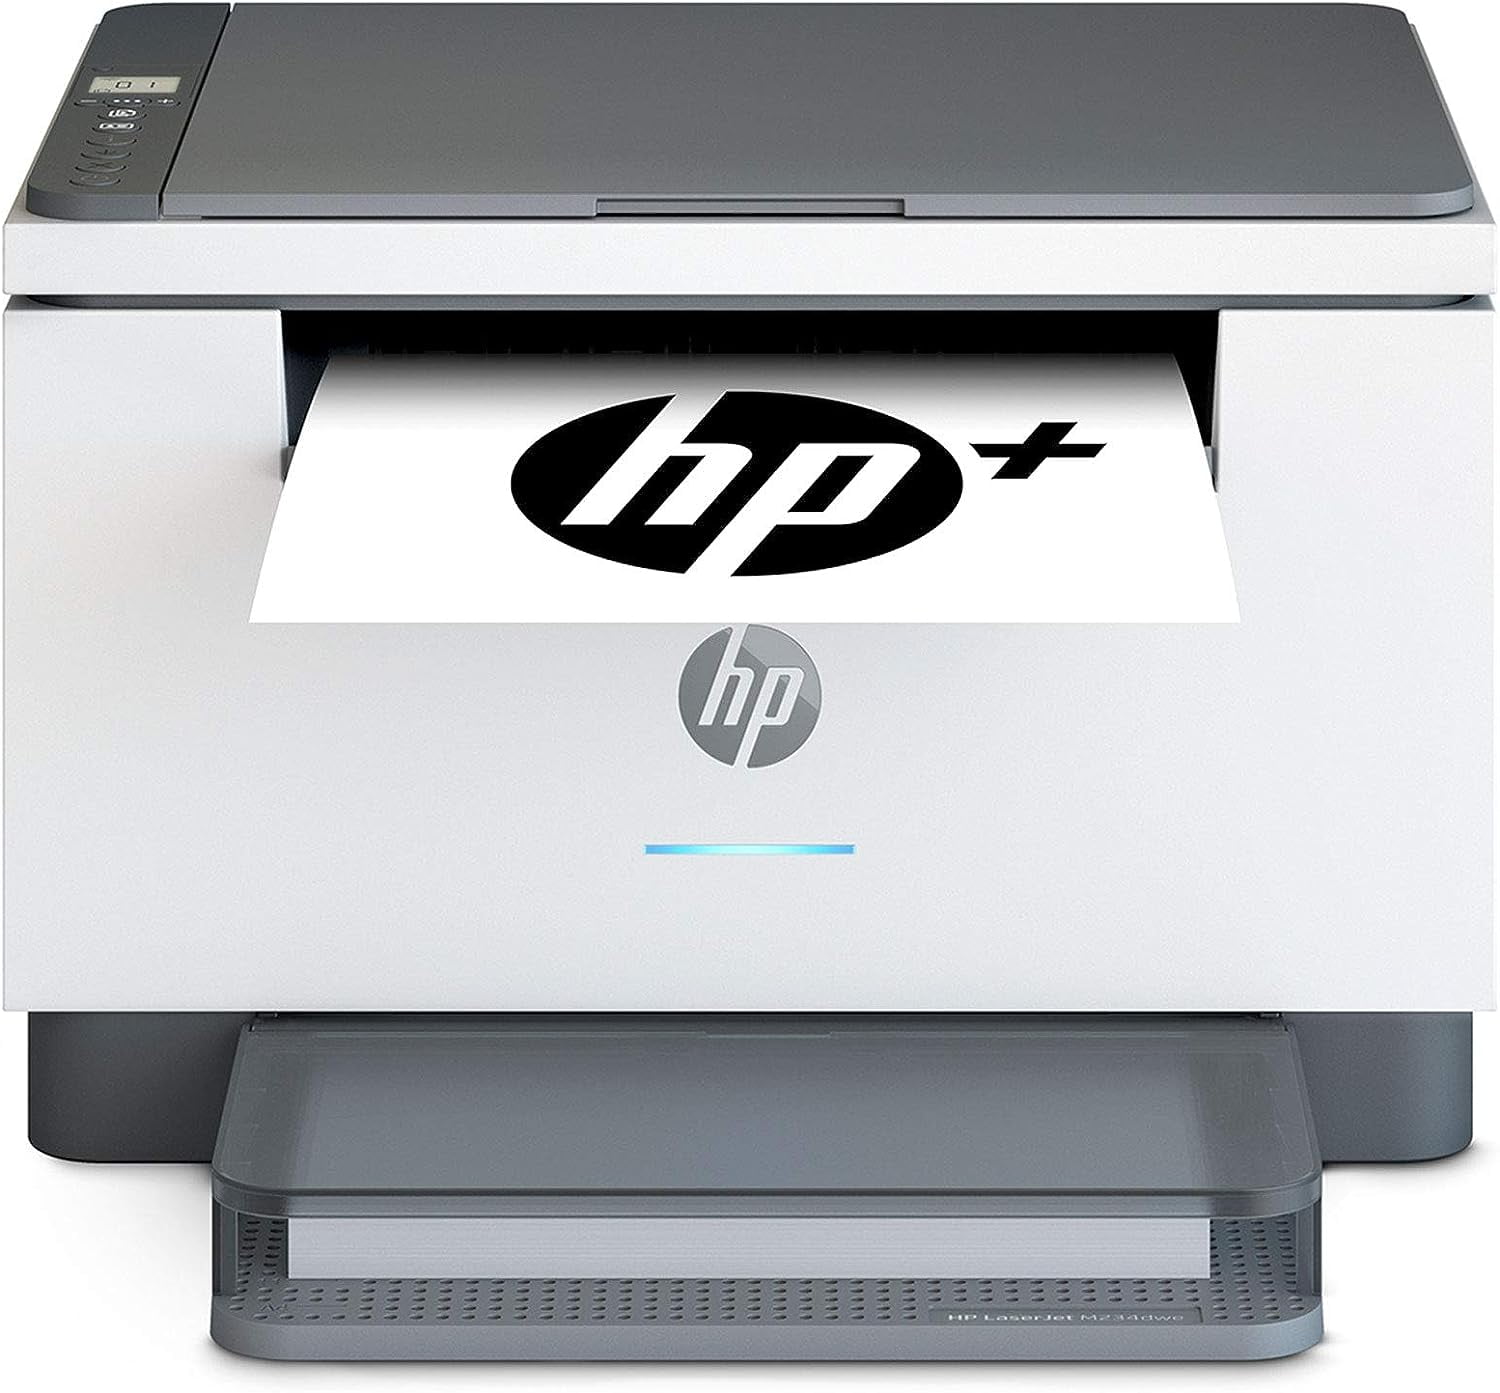 HP - Imprimante HP officejet pro 8025e multifonction Couleur jet d